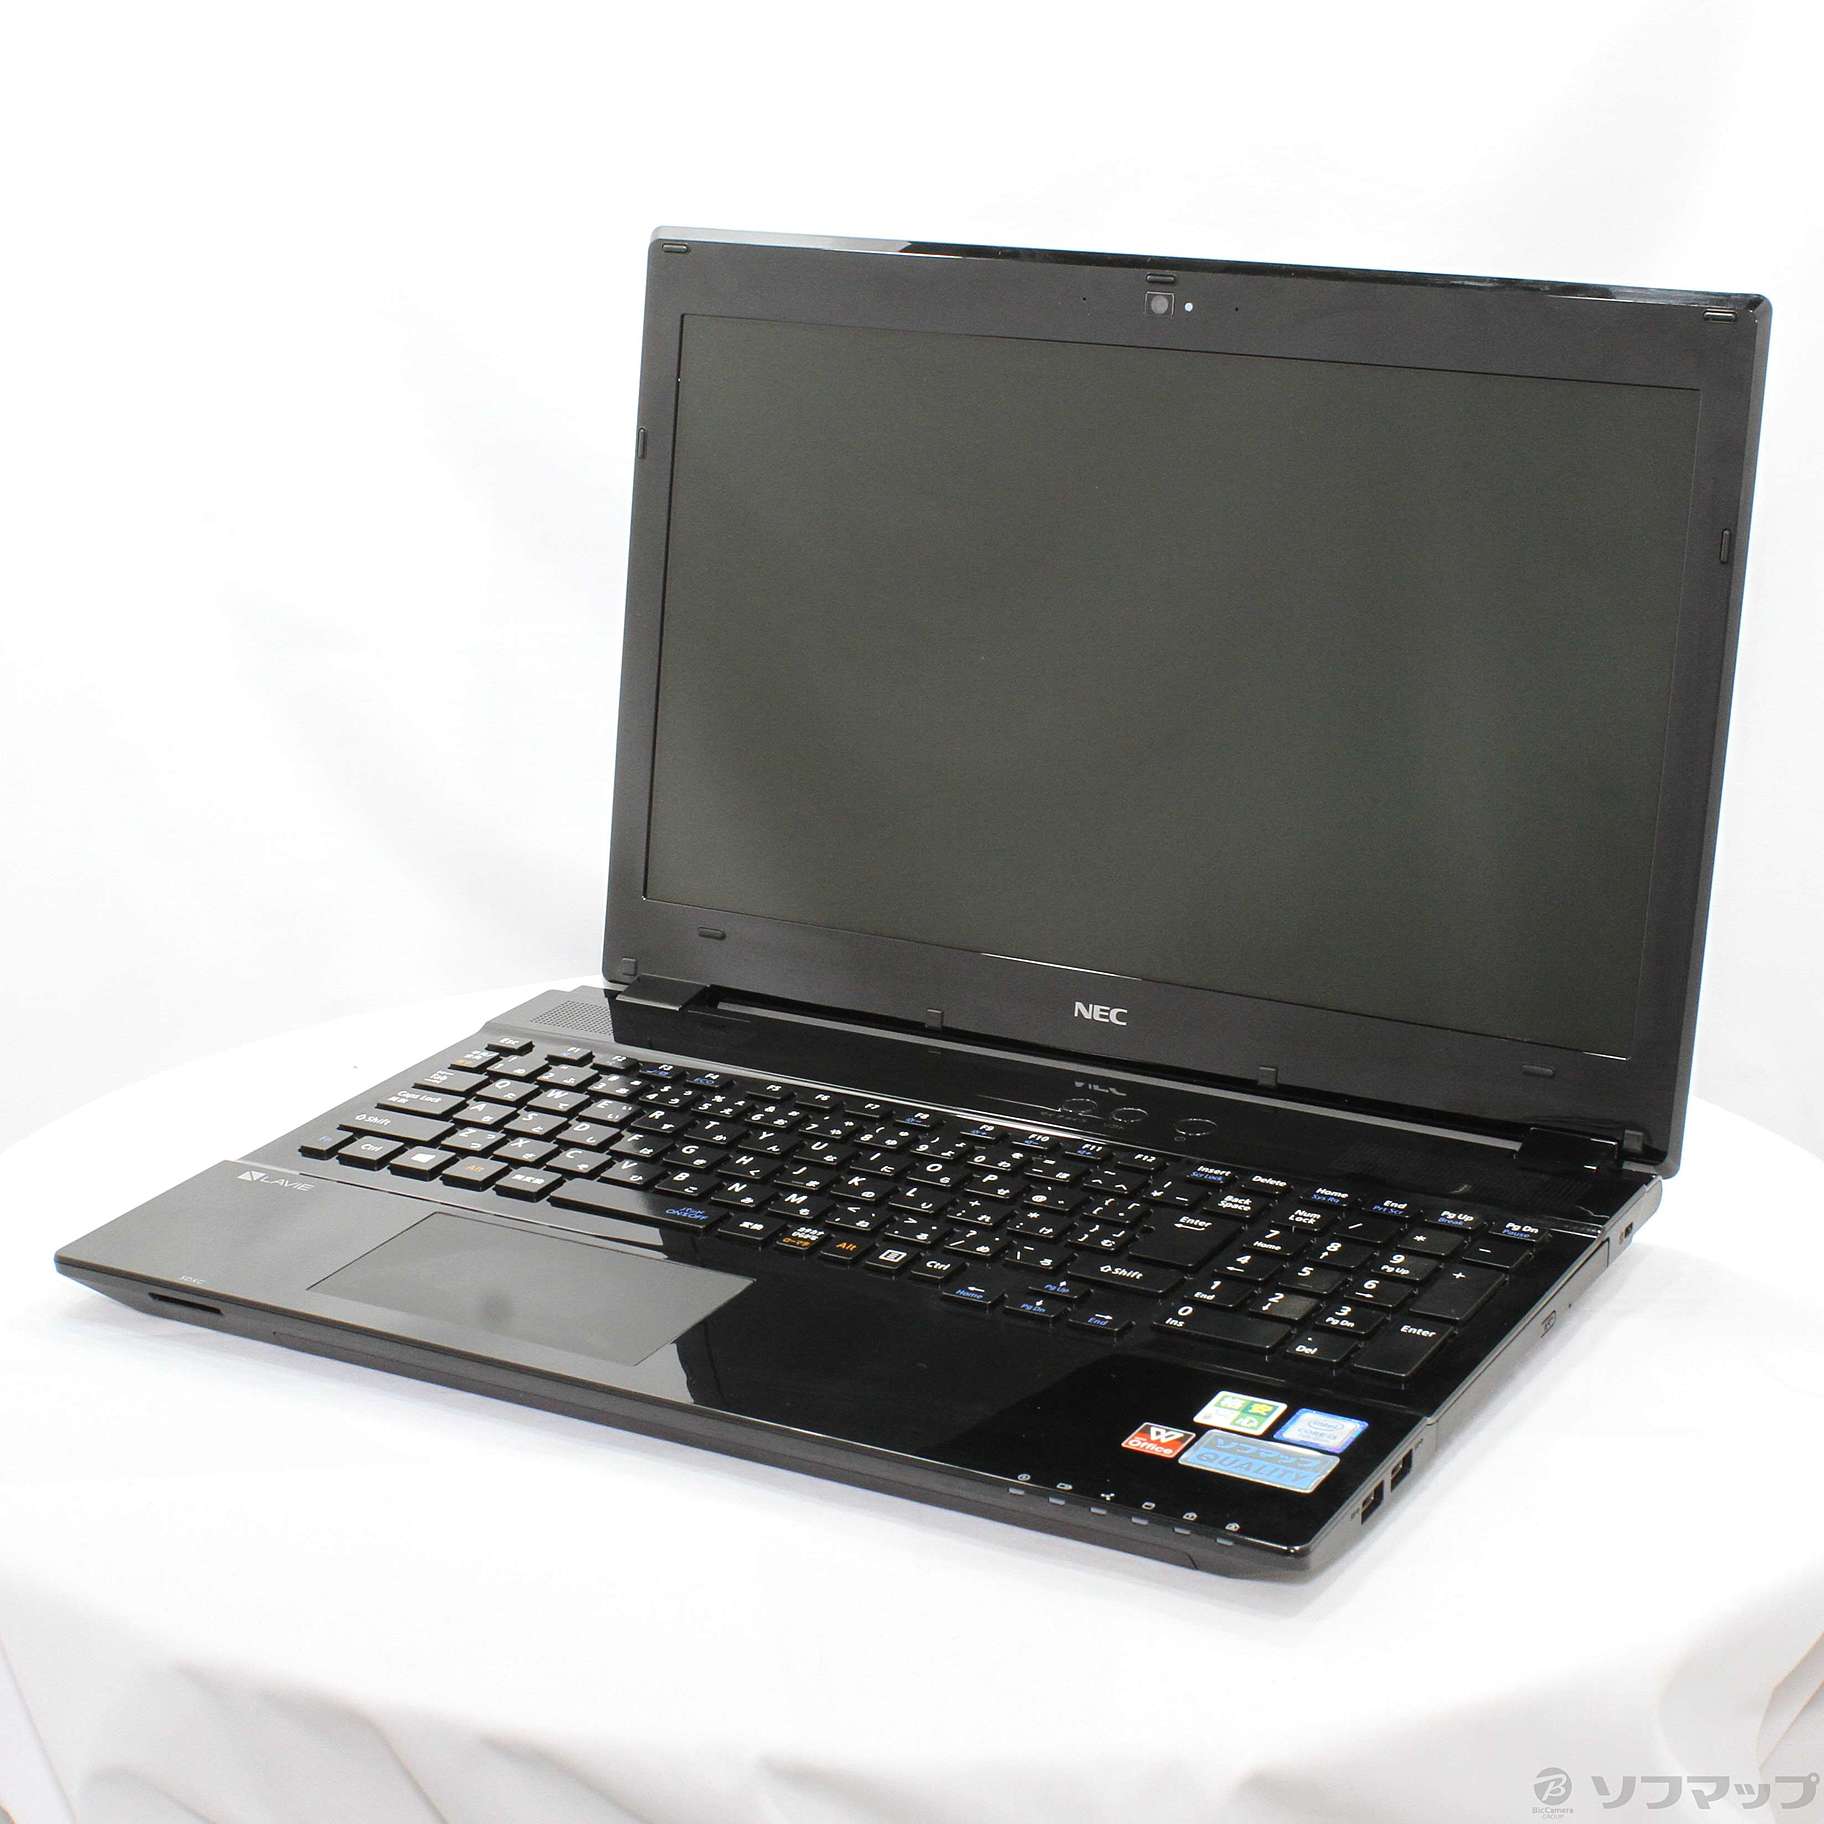 (中古)NEC 格安安心パソコン LaVie Note Standard NS350/FAB PC-NS350FAB ブラック (Windows 10)(251-ud)